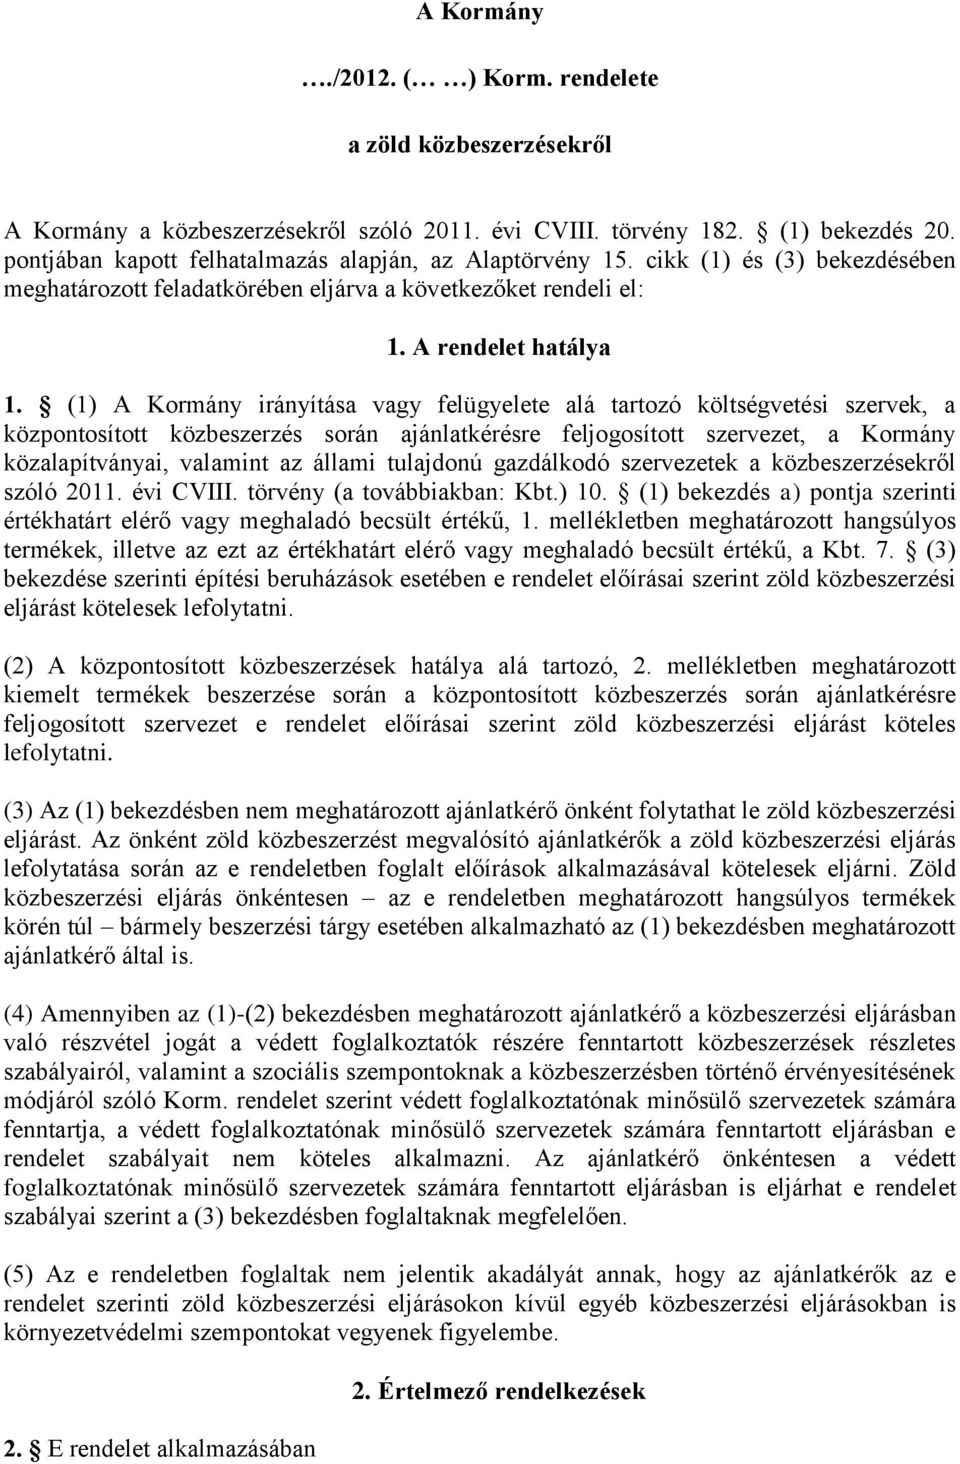 (1) A Kormány irányítása vagy felügyelete alá tartozó költségvetési szervek, a központosított közbeszerzés során ajánlatkérésre feljogosított szervezet, a Kormány közalapítványai, valamint az állami